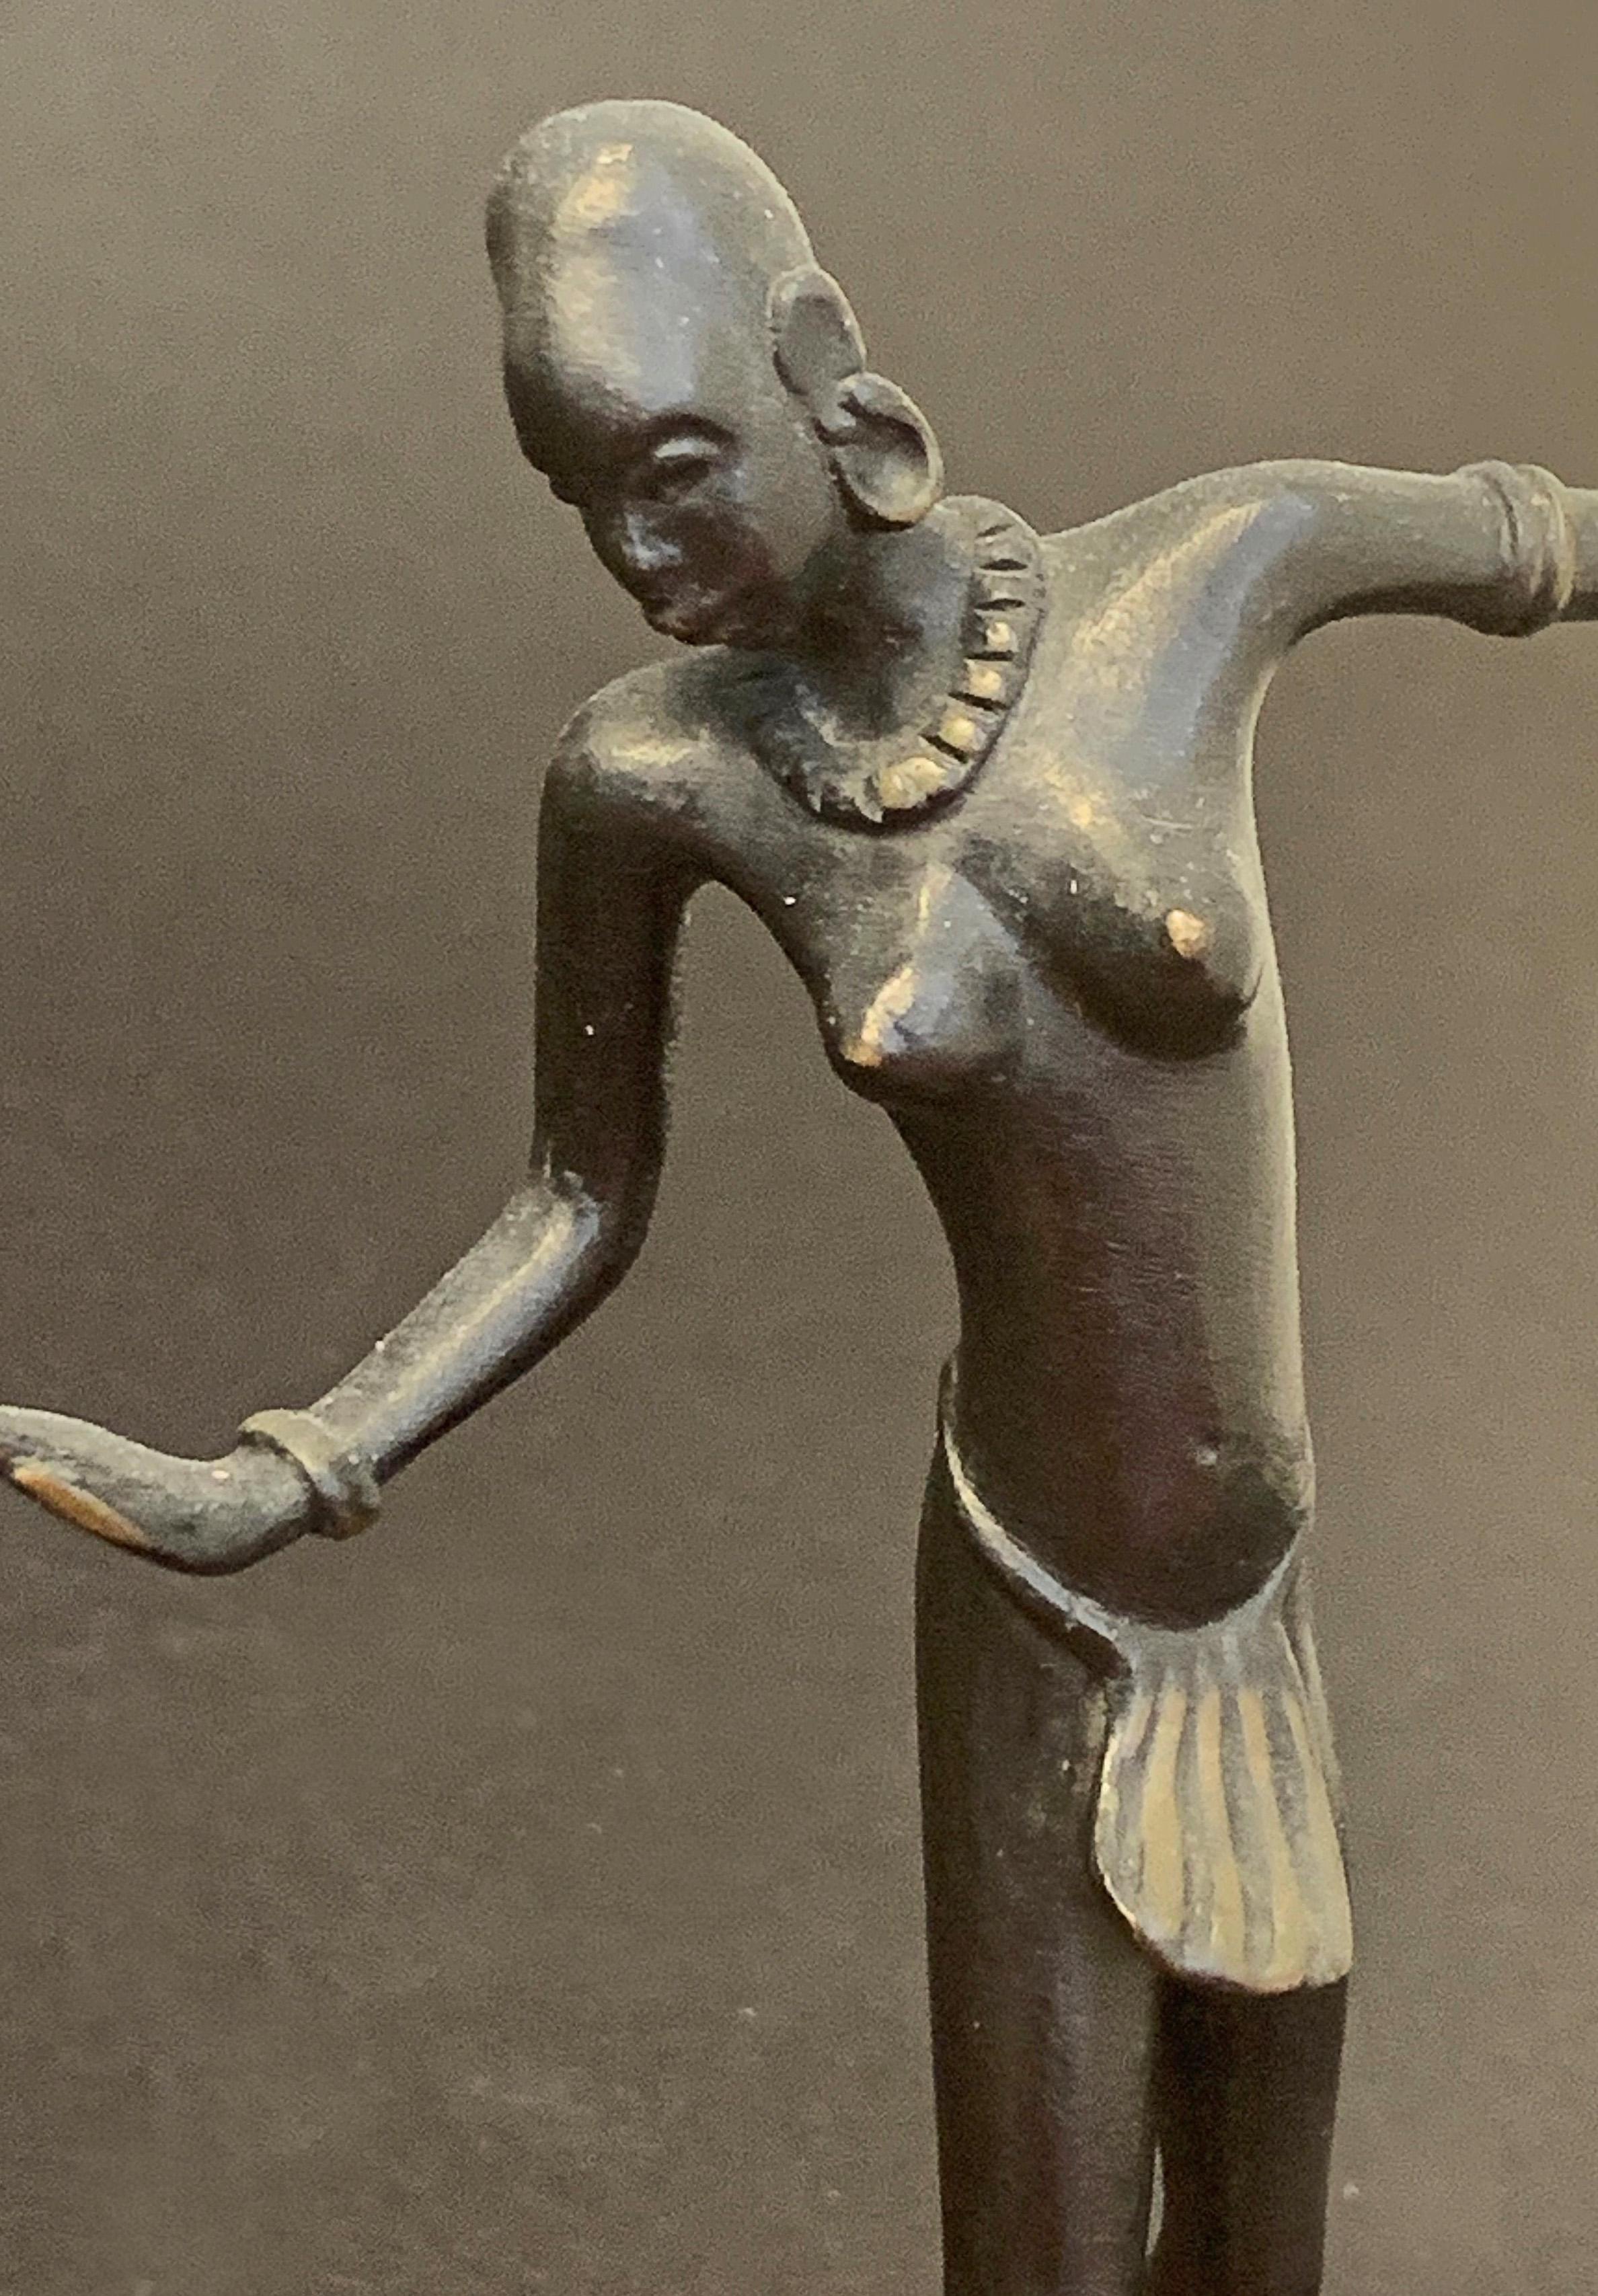 Diese zierliche Darstellung eines tanzenden weiblichen Aktes wurde von Richard Rohac geschaffen und zeigt deutlich das jahrzehntelange Interesse der Europäer an der Kunst und Kultur Afrikas - beginnend mit dem Kubismus, der sich stark an der